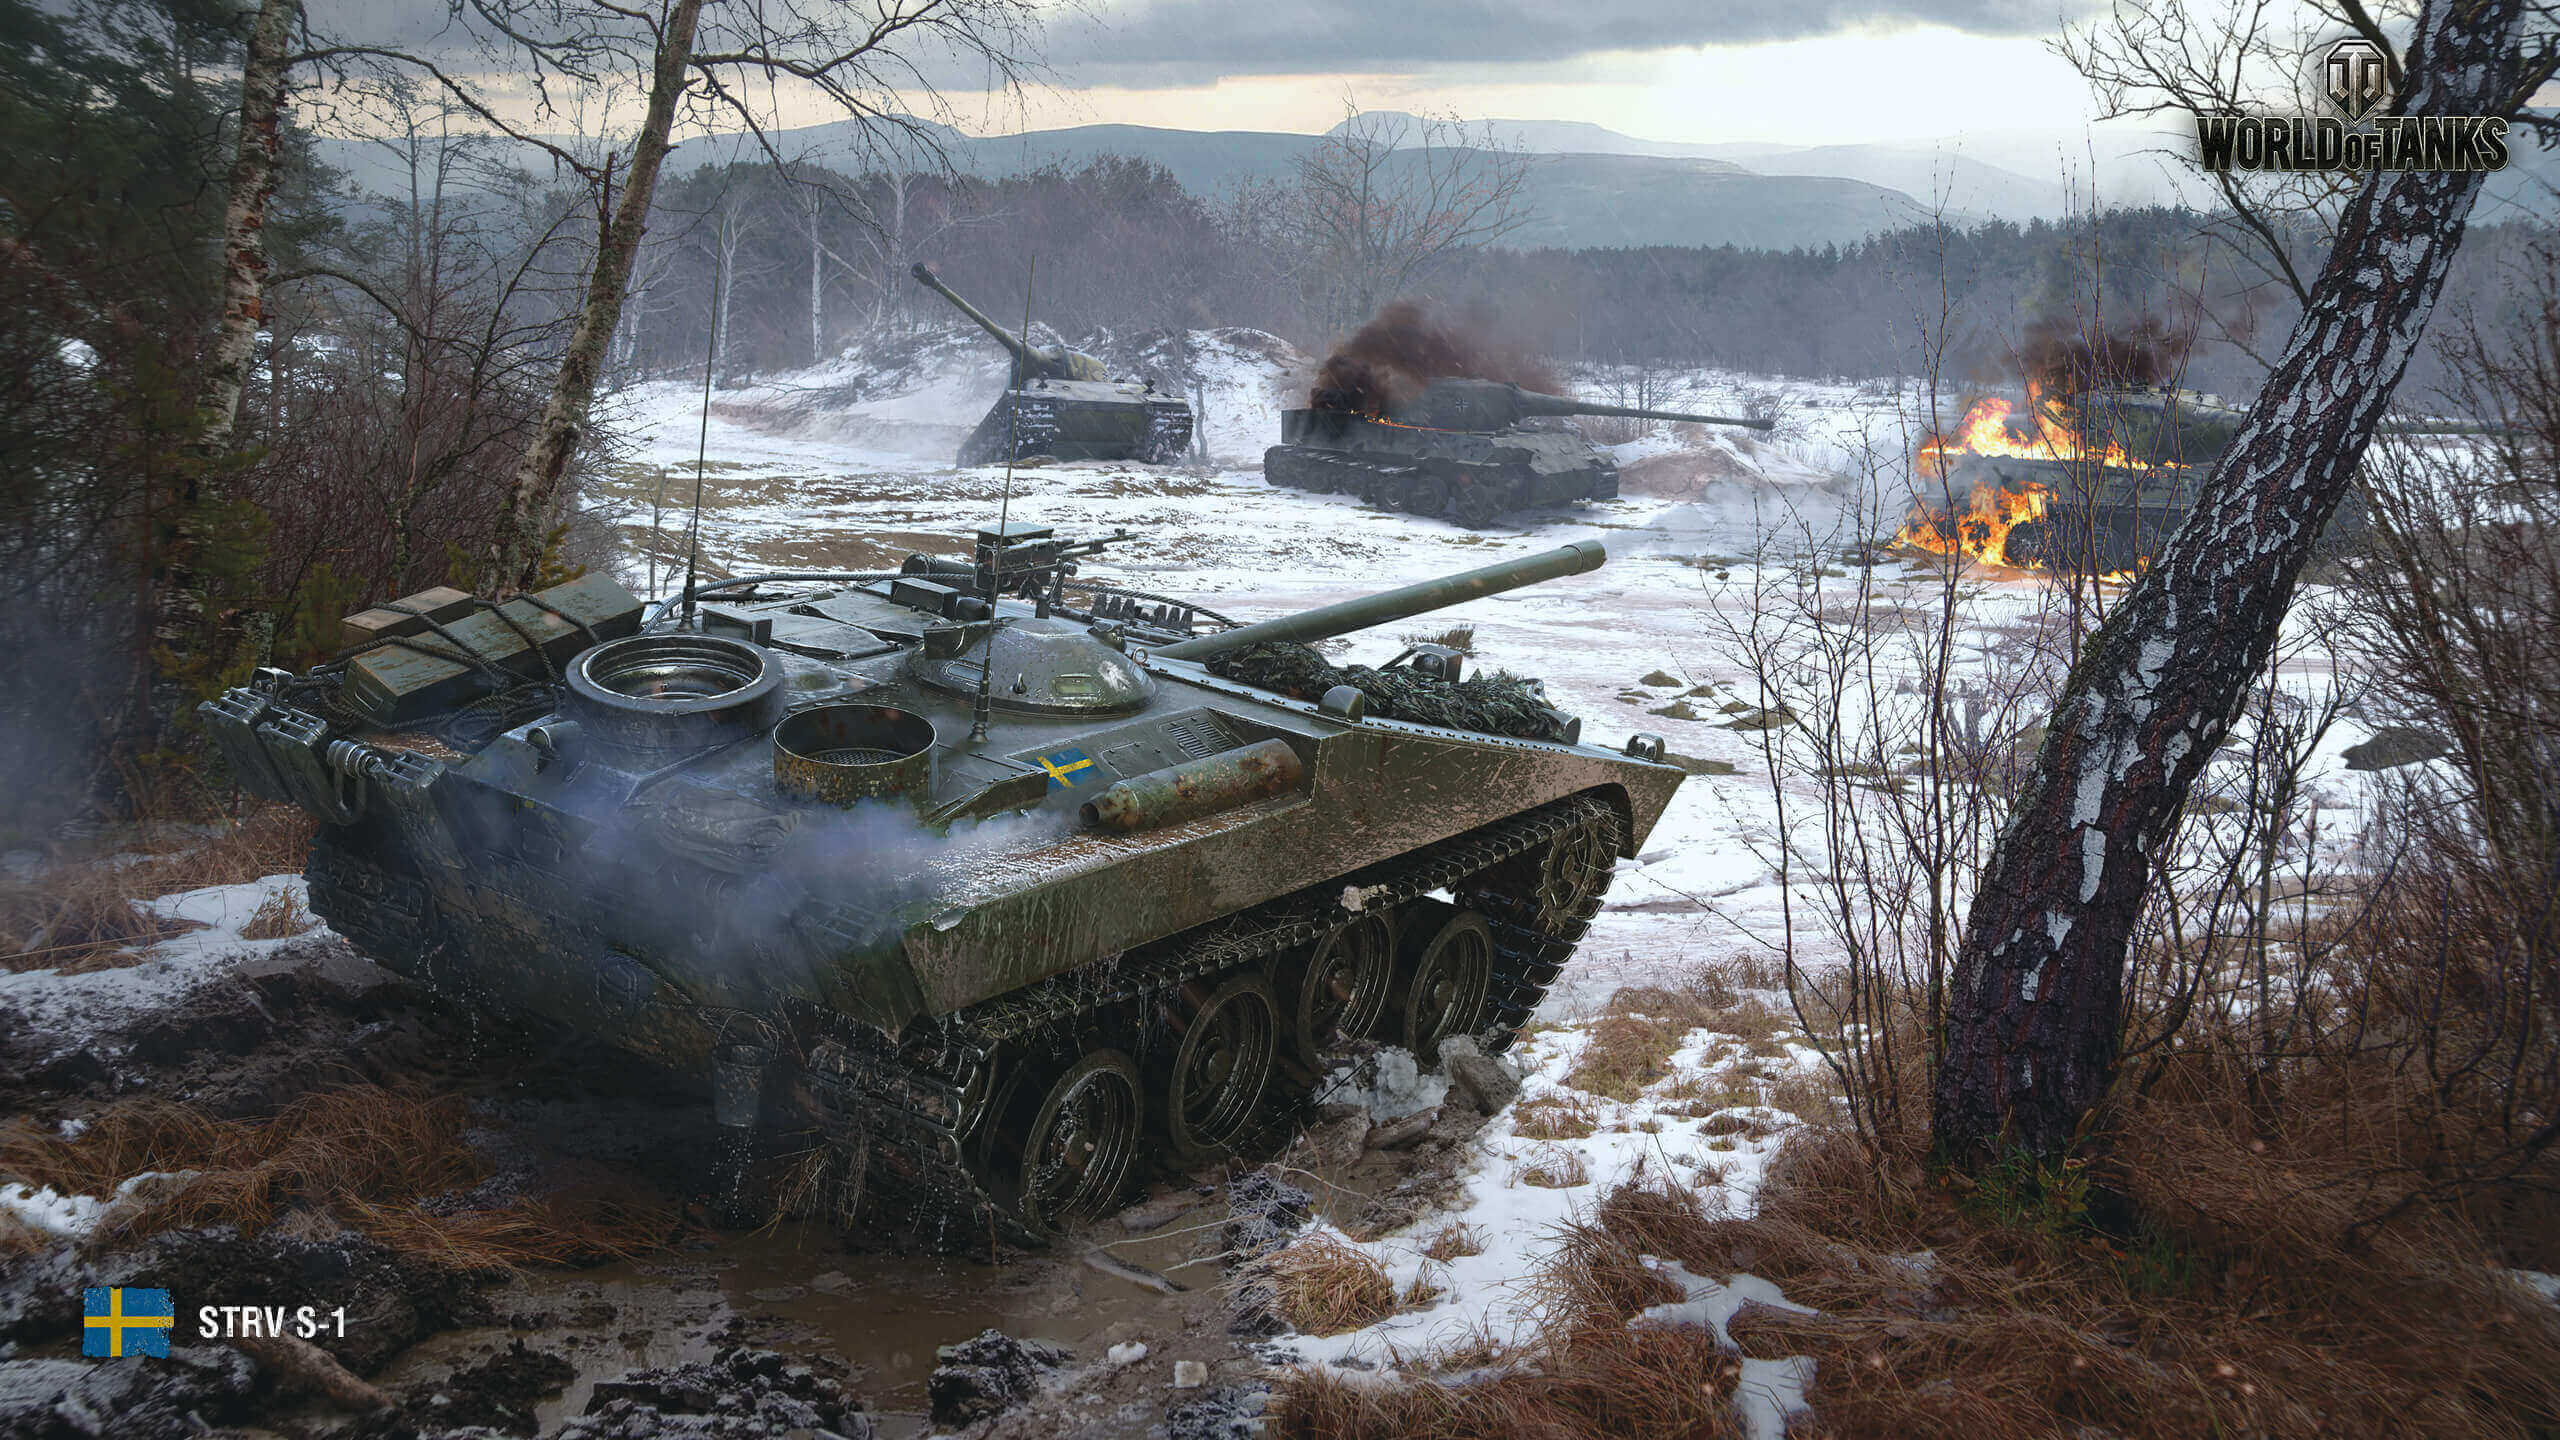 17年4月壁紙 Strv S1 戦車 World Of Tanks メディア 最高のビデオやアートワーク